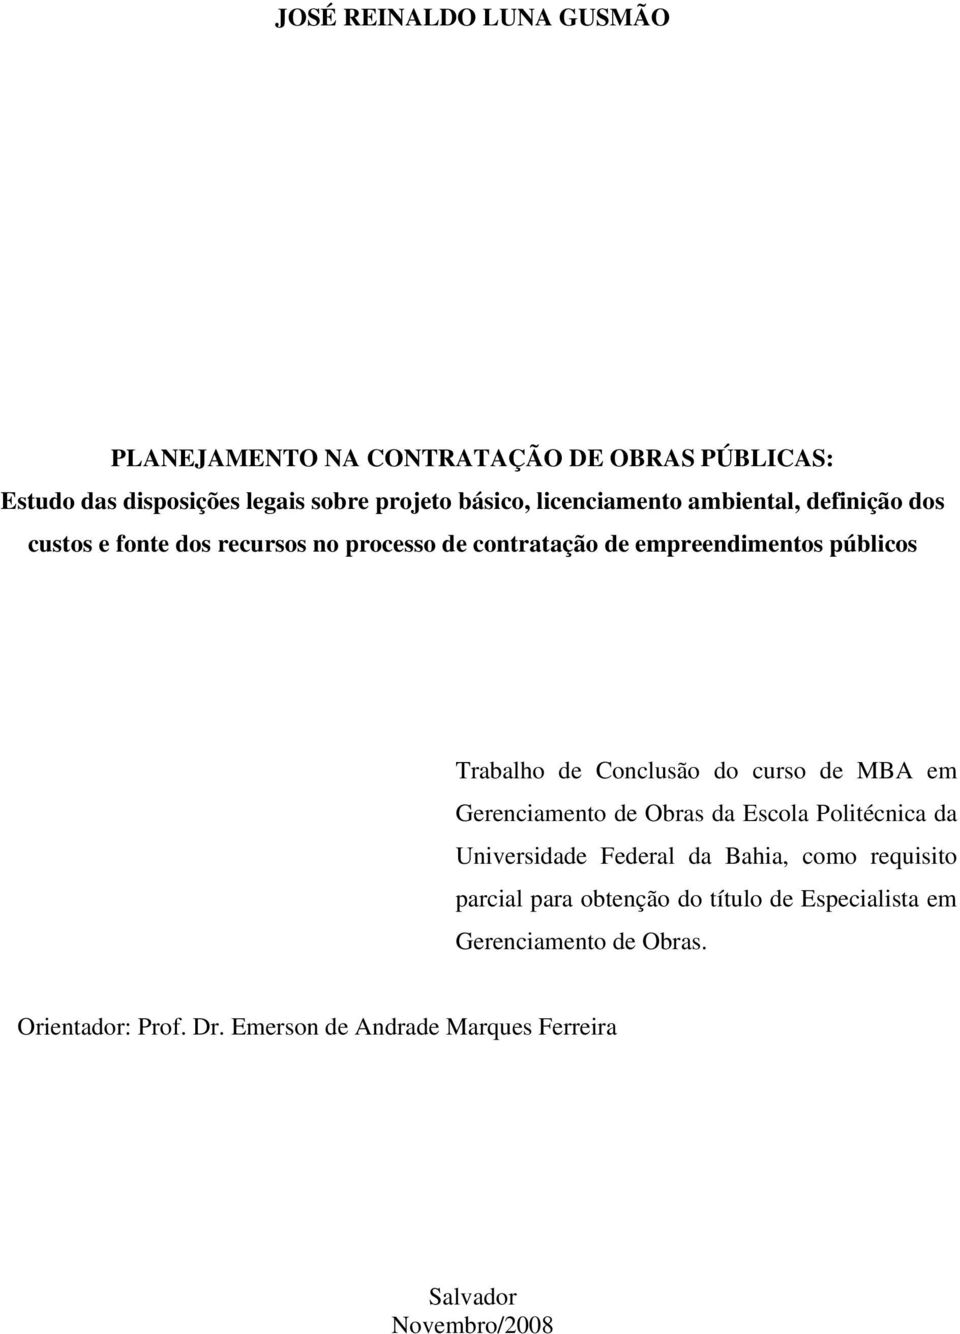 Conclusão do curso de MBA em Gerenciamento de Obras da Escola Politécnica da Universidade Federal da Bahia, como requisito parcial